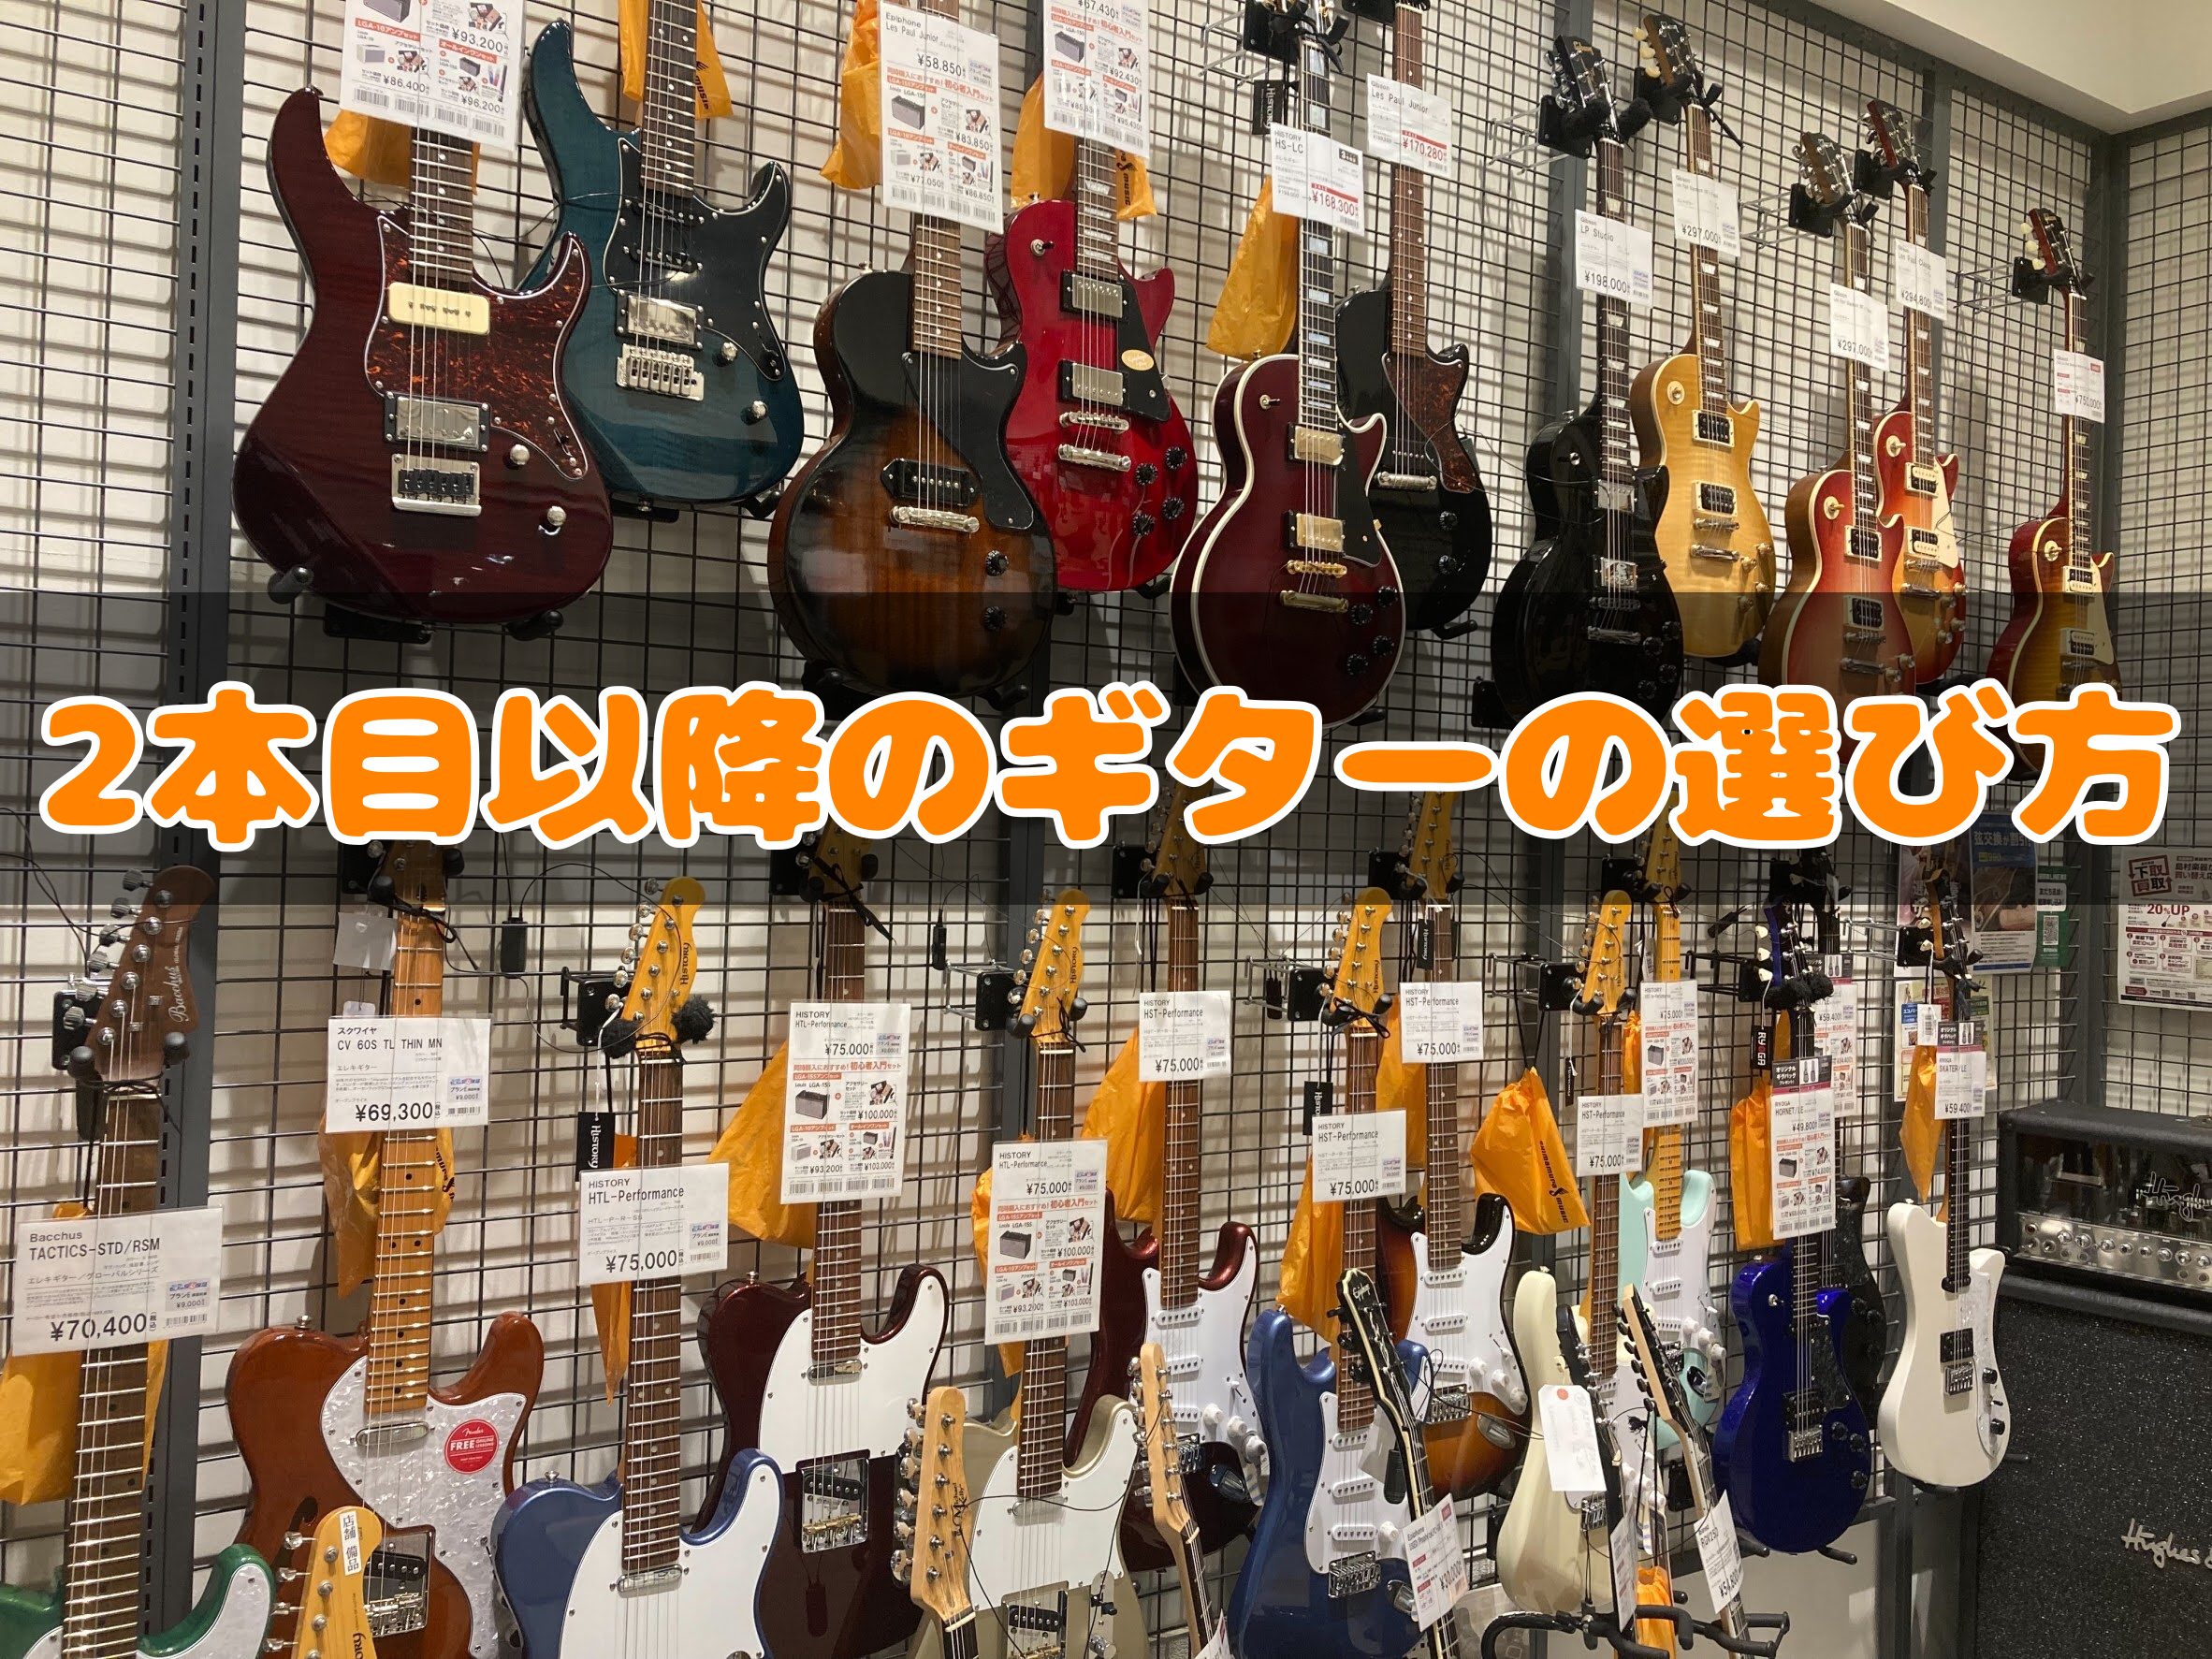 皆様こんにちは！神戸北店エレキギター担当の藤野(ふじの)です♪ 10月に入り肌寒い季節になりましたね！ギタリストにとっては手がかじかみ辛い季節です。。 今回は1本目のギターを買い、更なる上達を目指している方！よりかっこいいギターでライブに挑みたい方！ そんなあなたに2本目以降のエレキギターを選ぶポイ […]